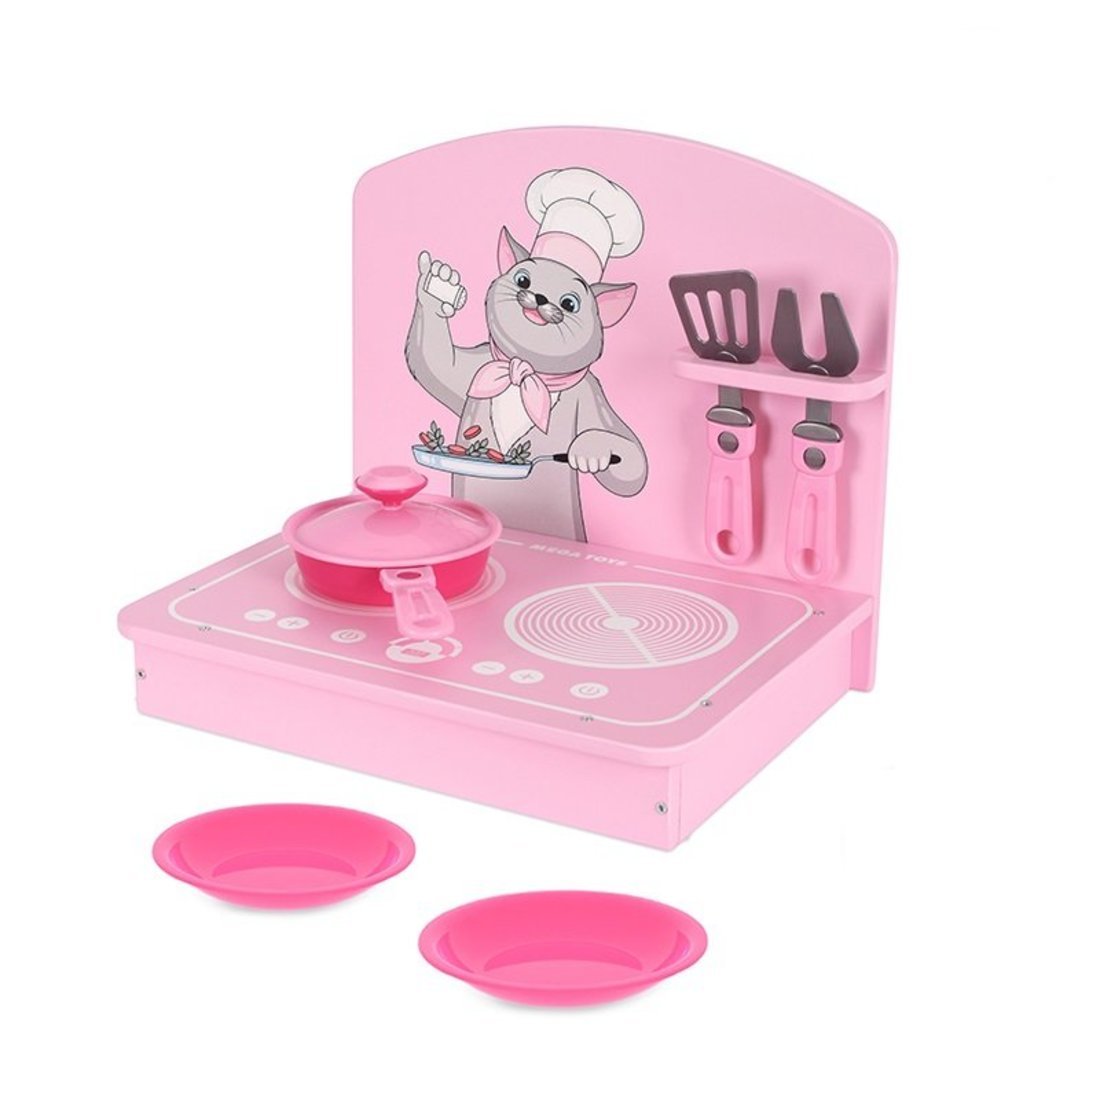 Кухня детская мини 7 предметов, розовая